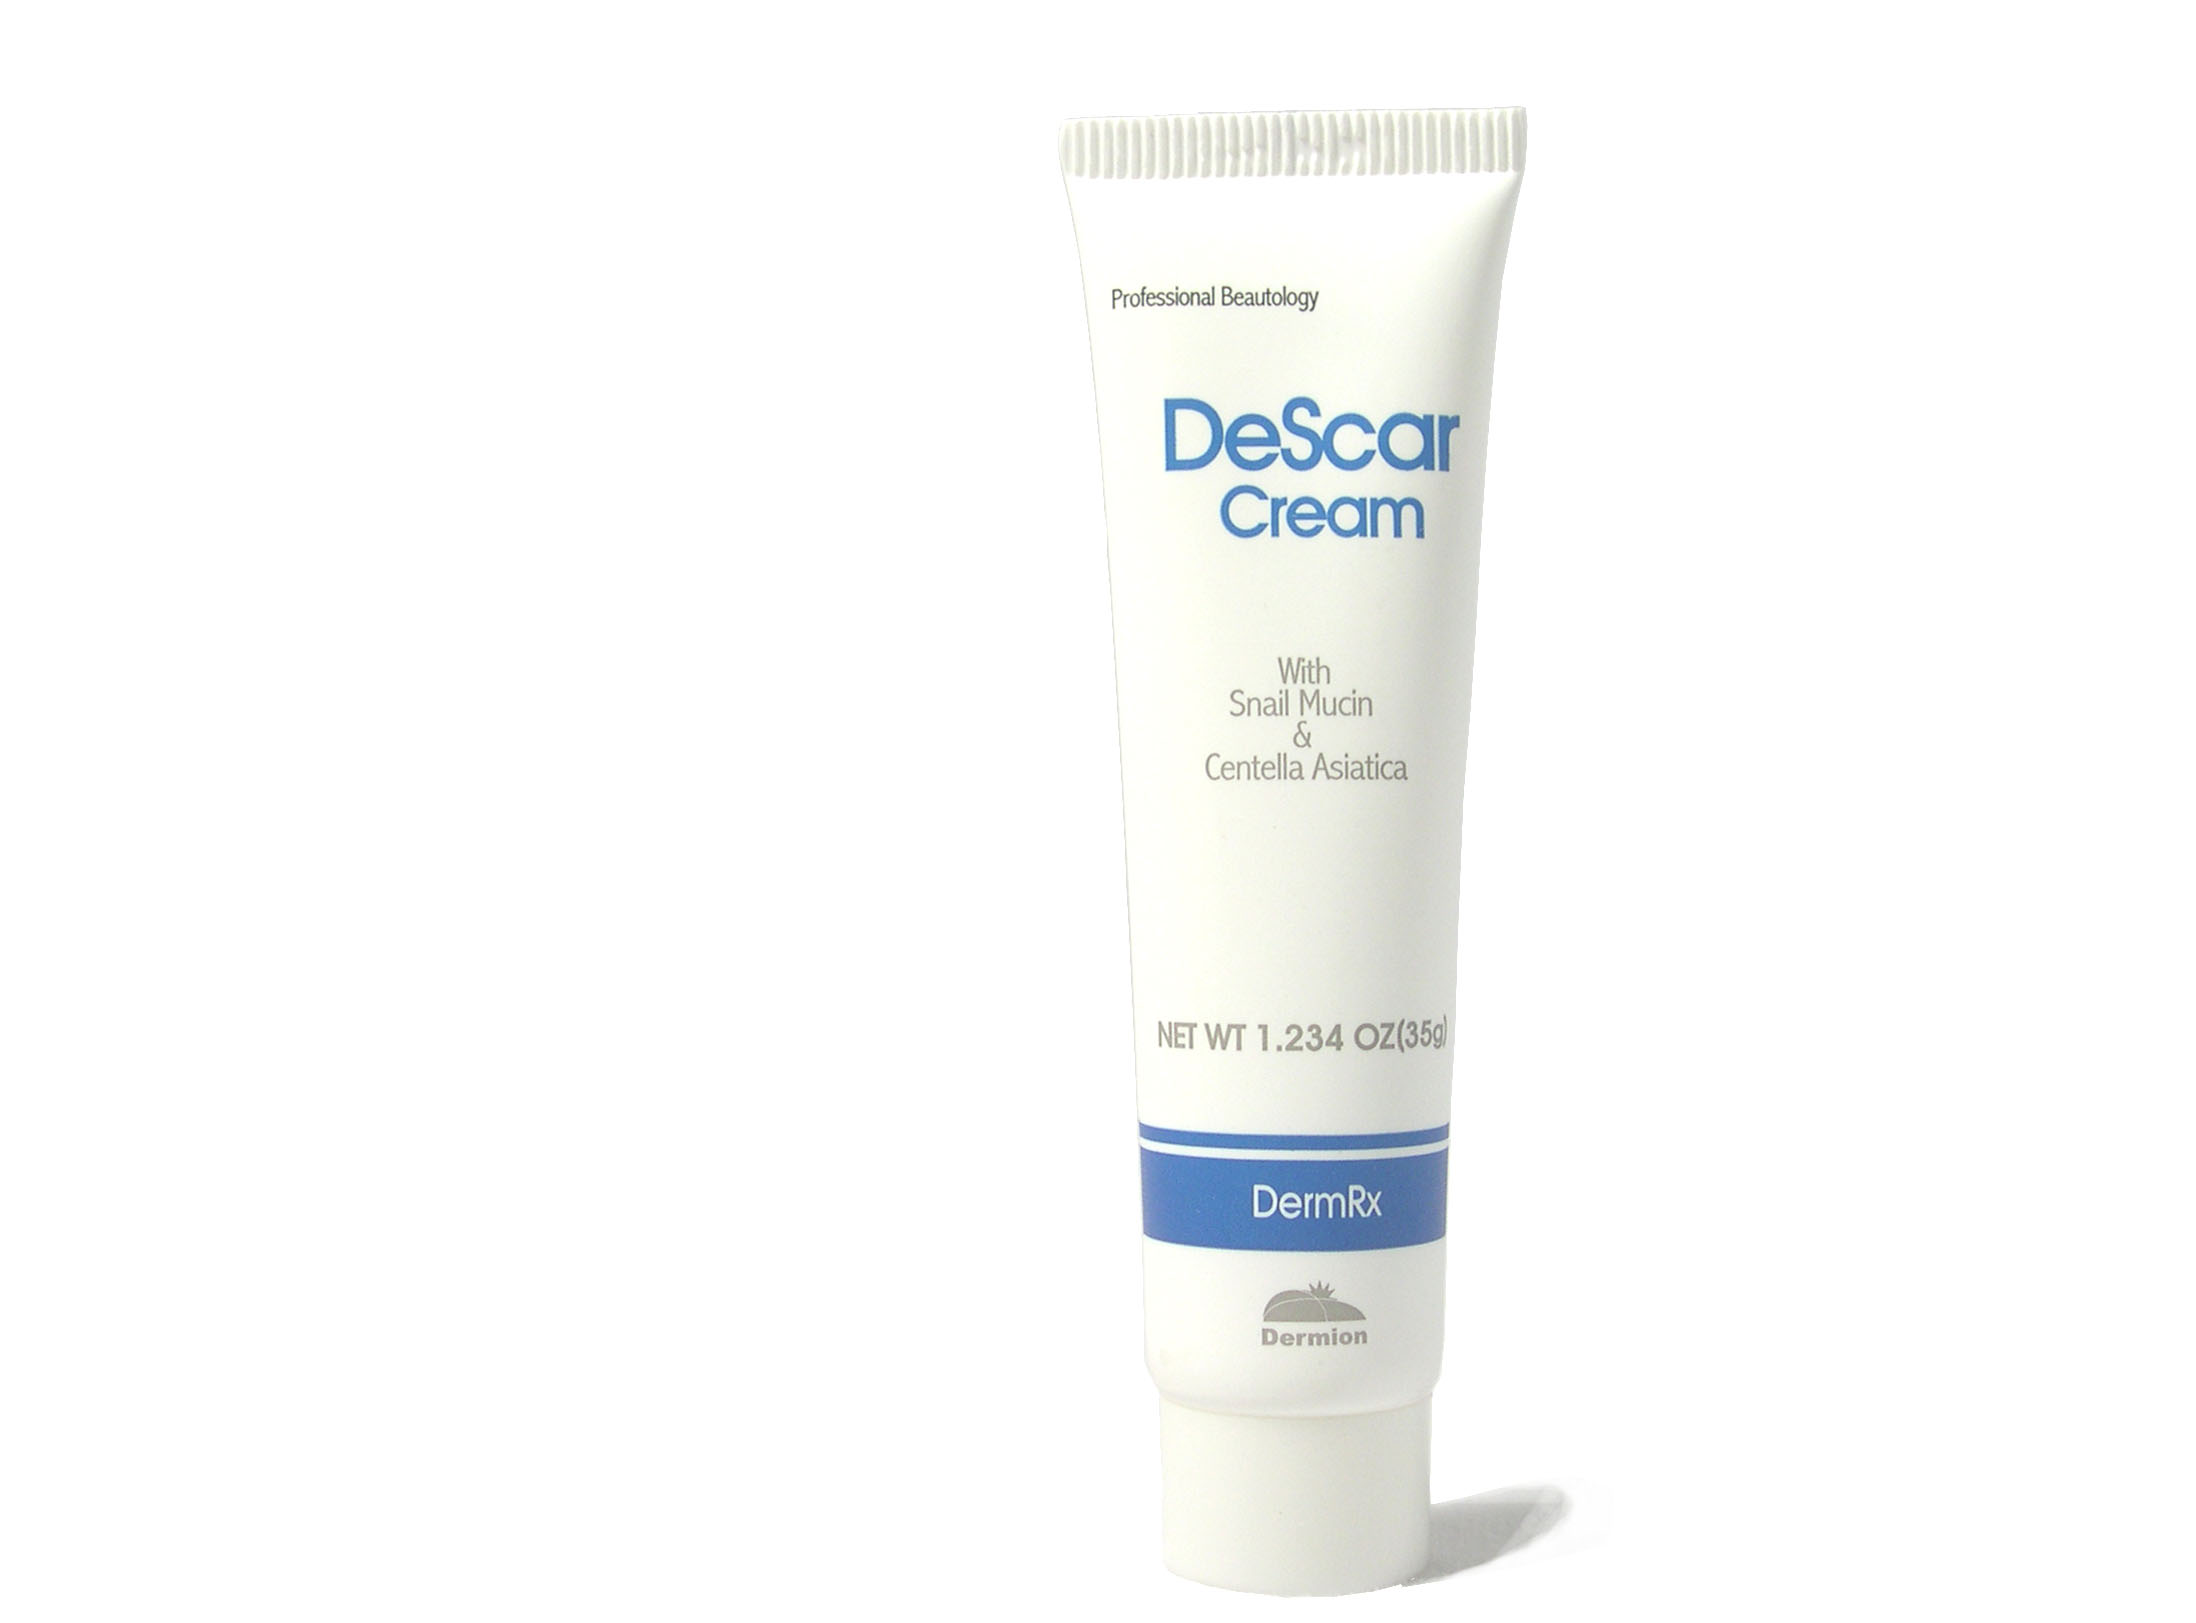 DeScar Cream Made in Korea